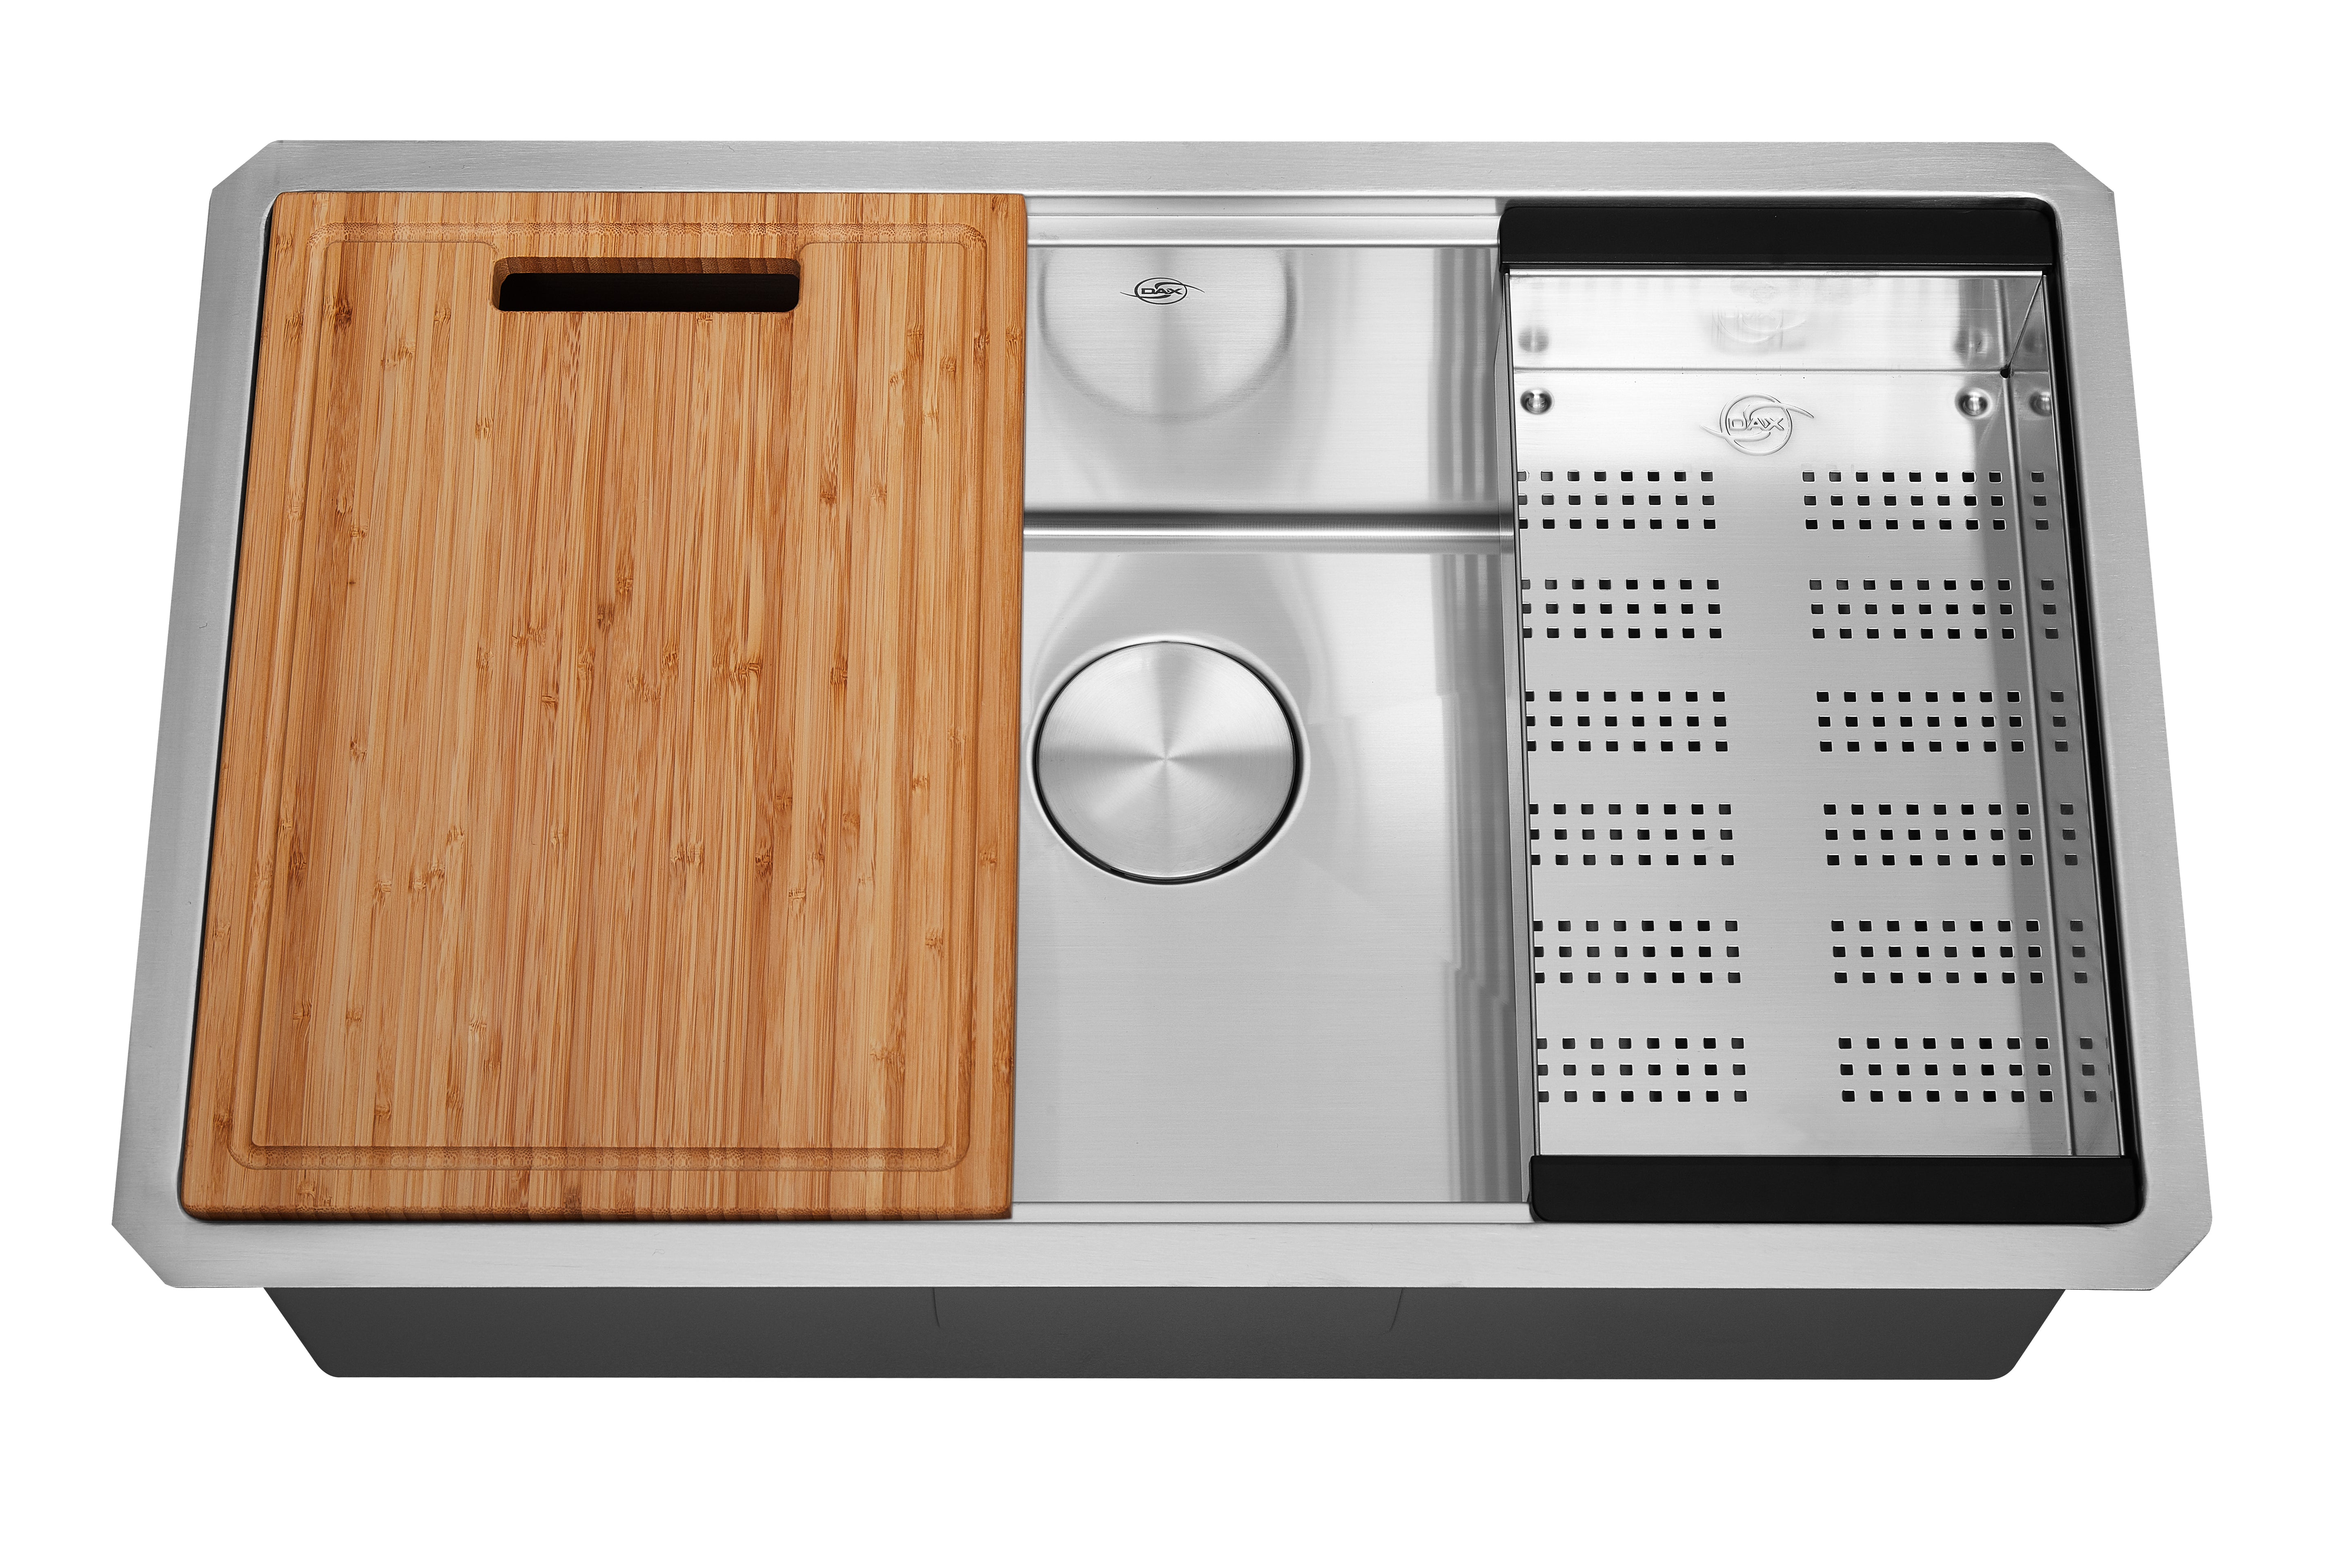 Fregadero de cocina DAX Workstation Undermount Single Bowl - Hecho a mano - Acero inoxidable 304 - Calibre 16 - Accesorios incluidos (DAX-WS3019-R10) 